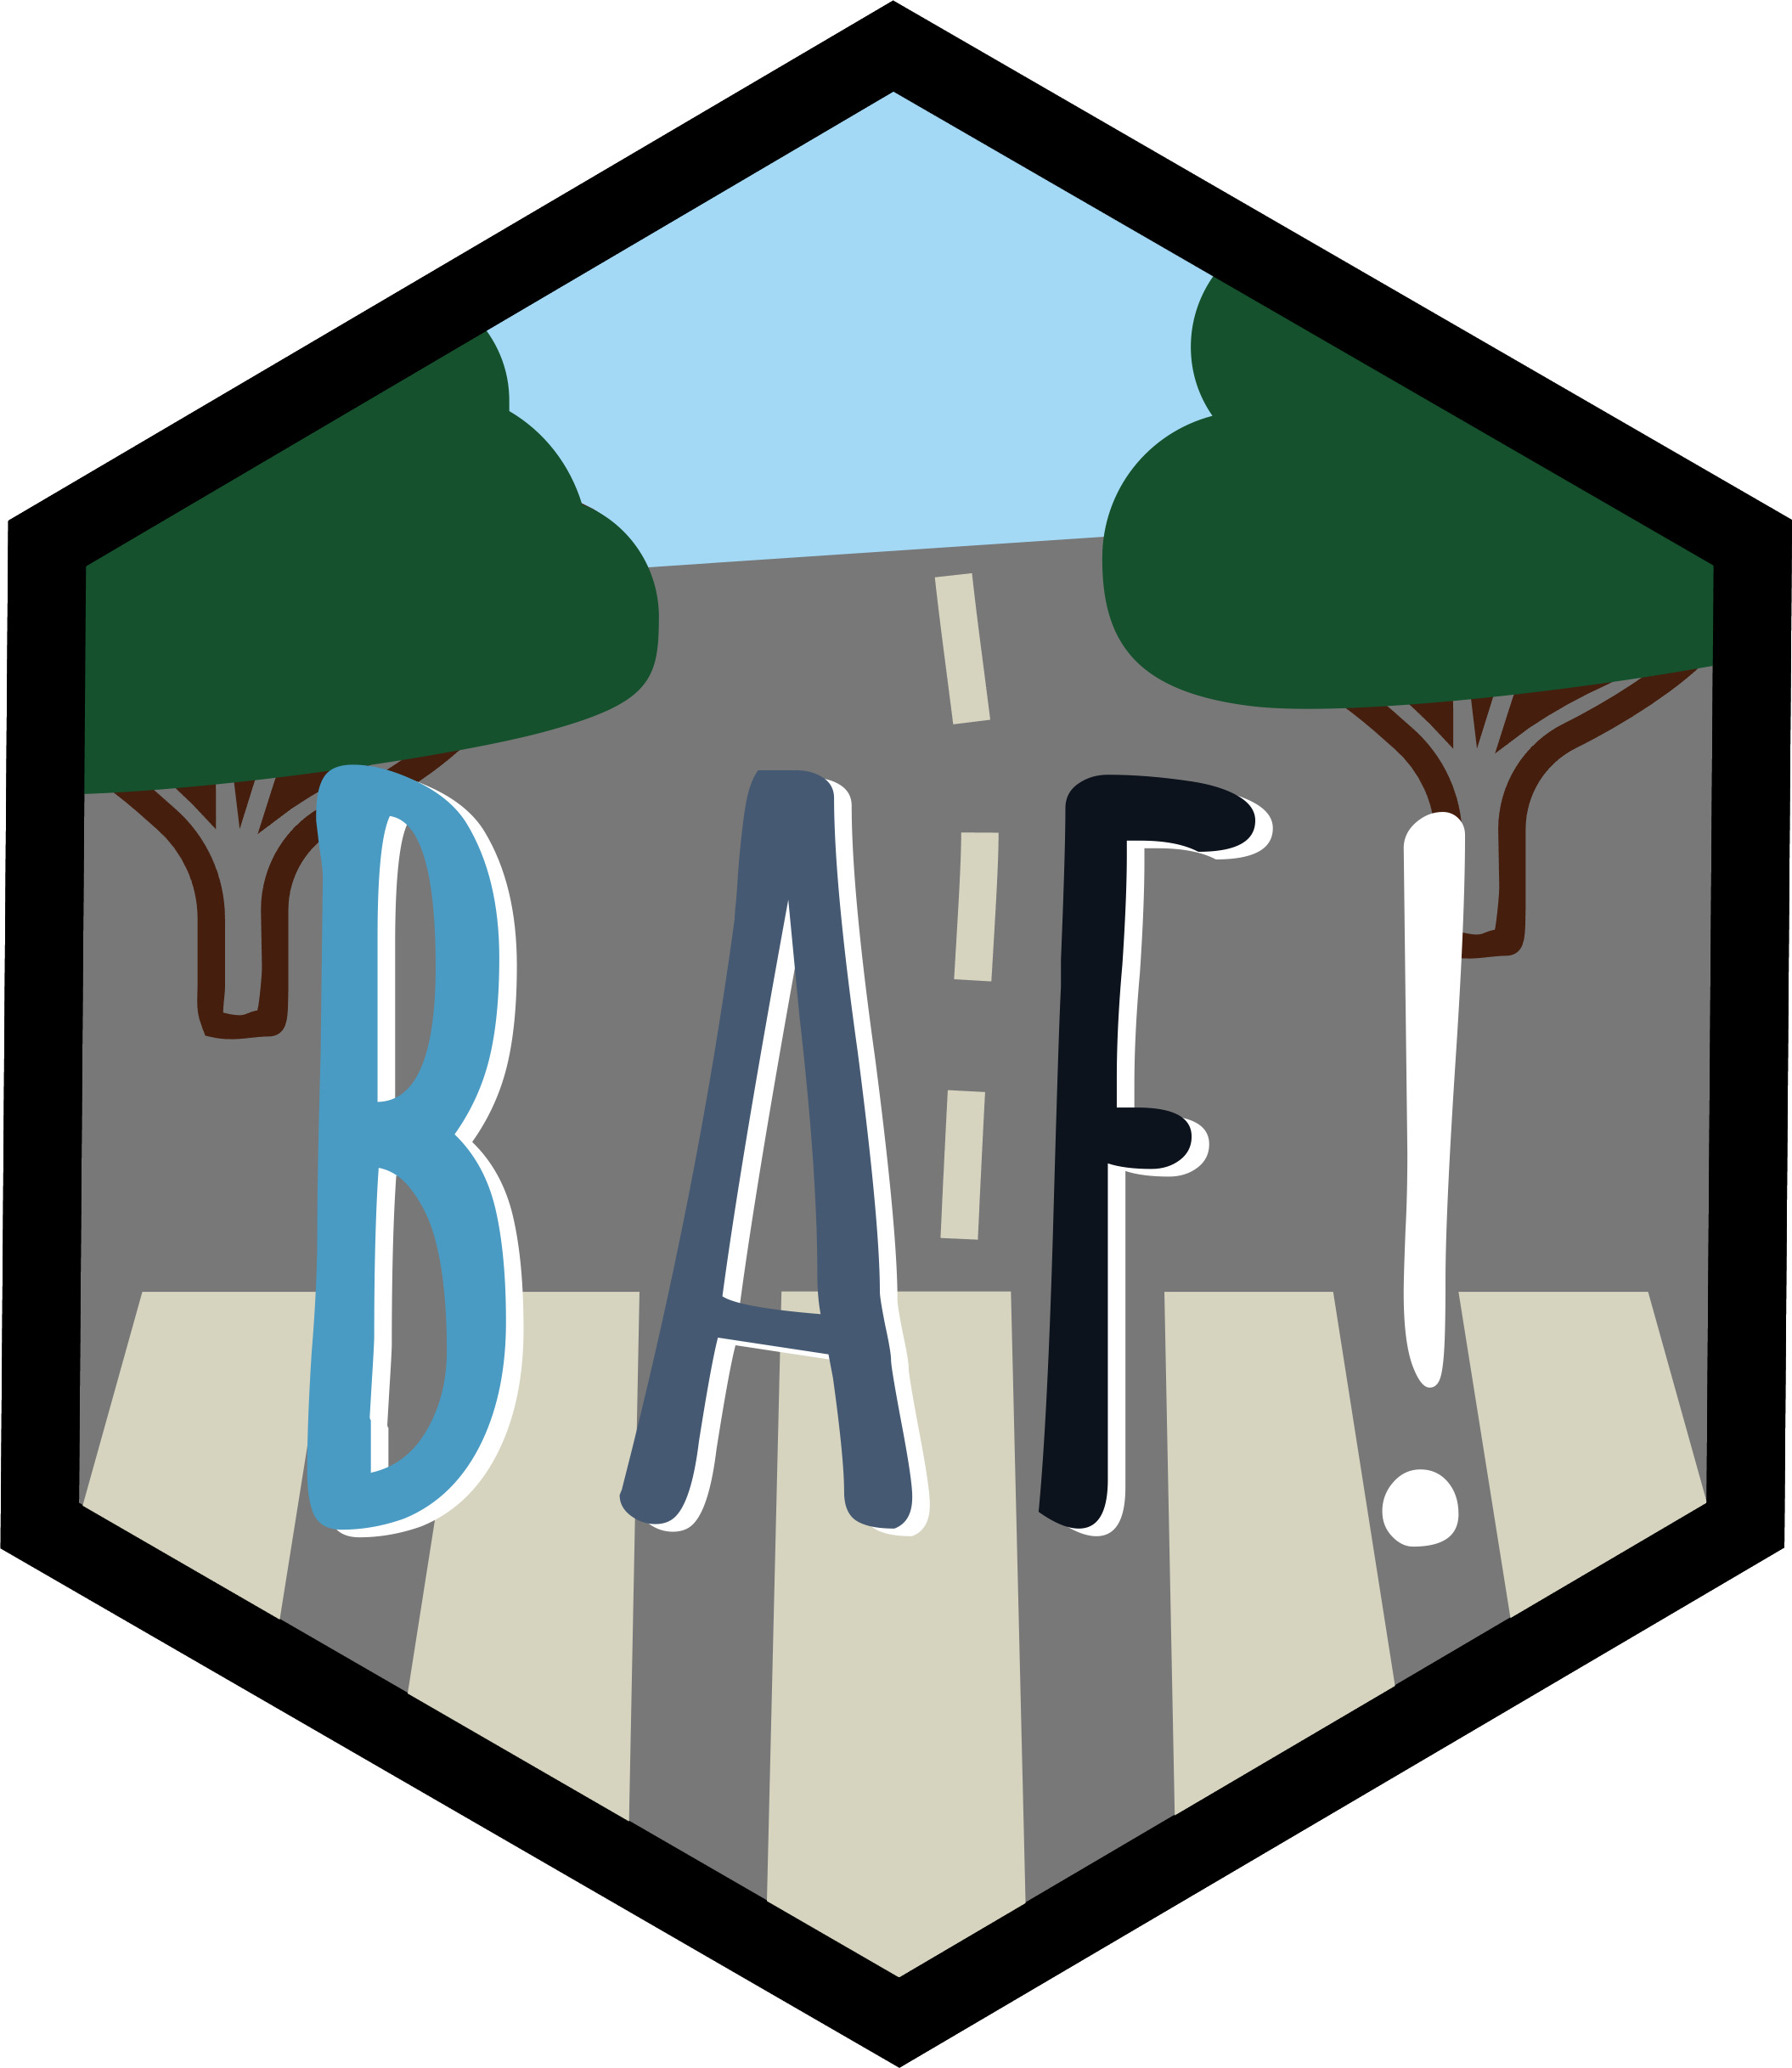 baf hex logo